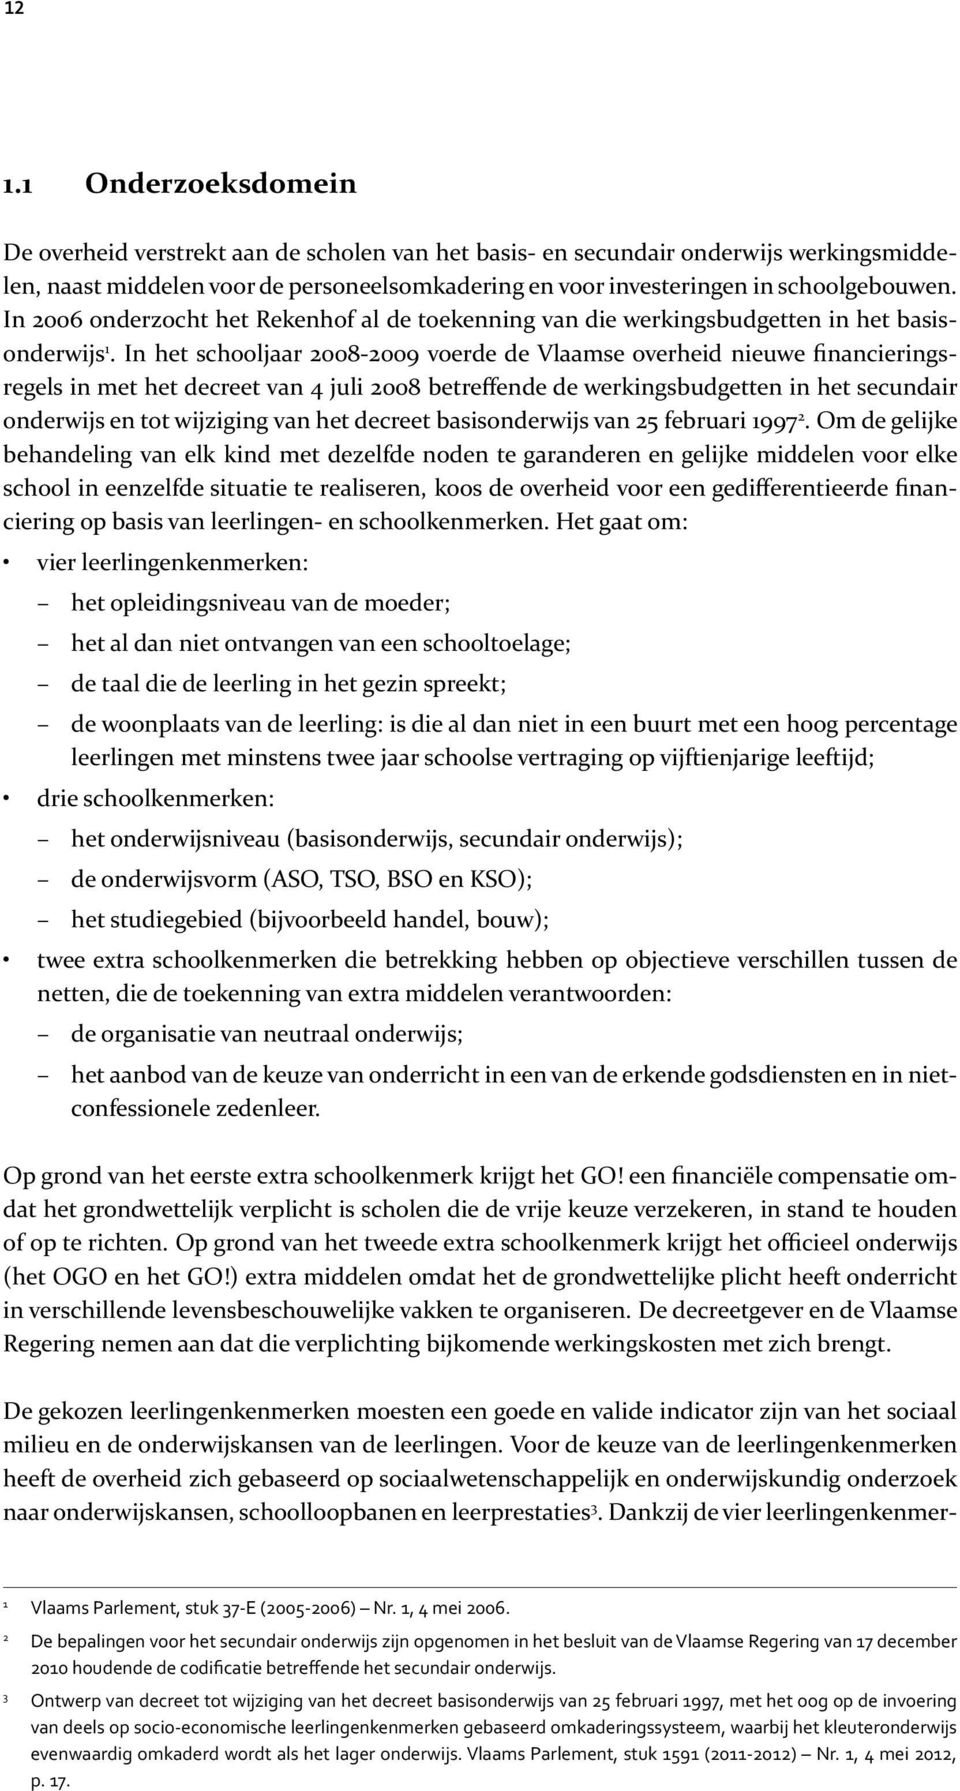 In het schooljaar 2008-2009 voerde de Vlaamse overheid nieuwe financieringsregels in met het decreet van 4 juli 2008 betreffende de werkingsbudgetten in het secundair onderwijs en tot wijziging van